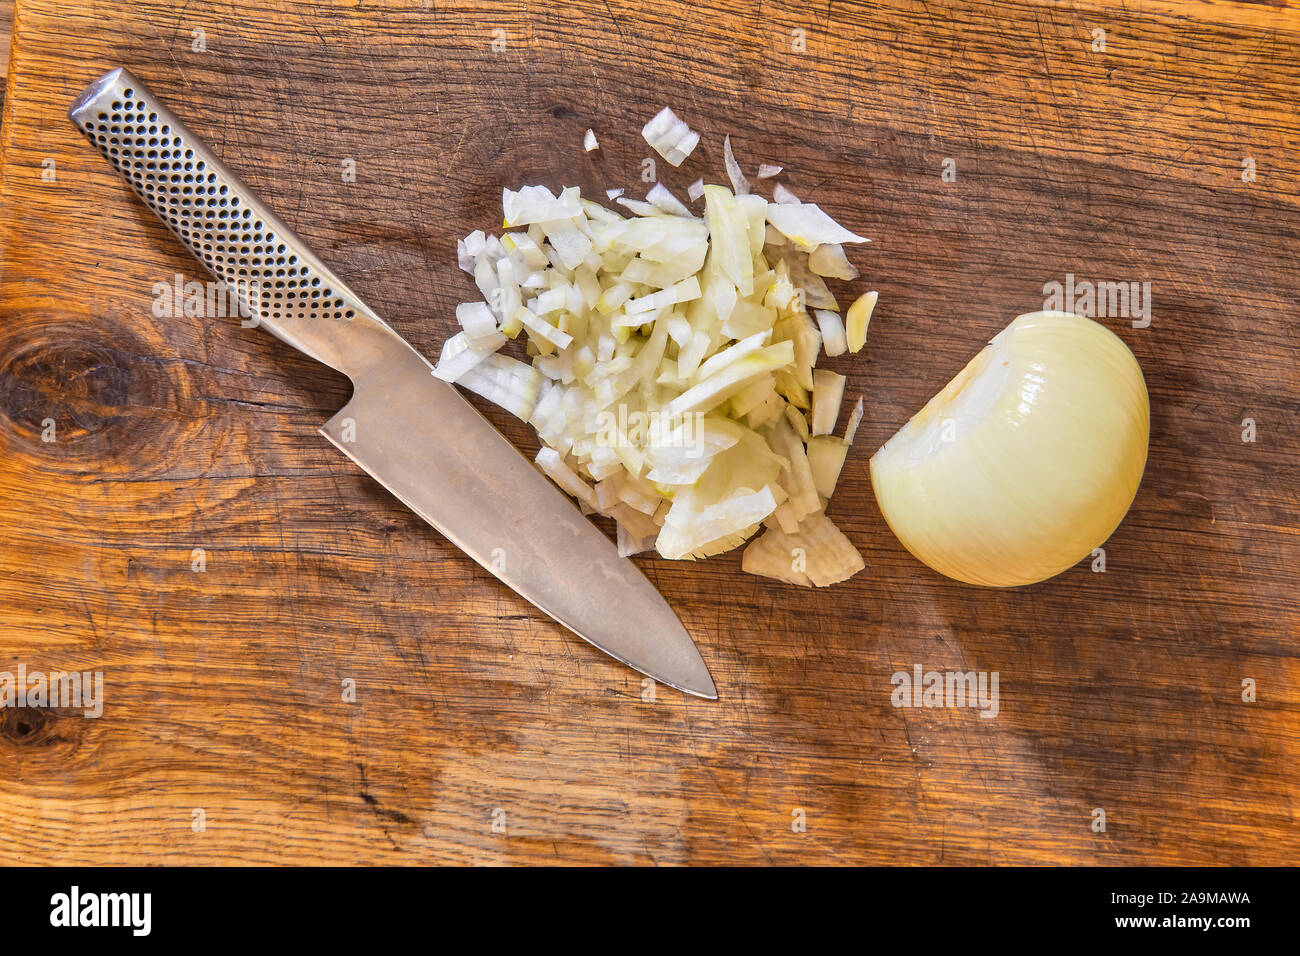 Die gewürfelten Zwiebeln in Scheiben geschnitten auf einer hölzernen Schneidebrett mit einem Köche Messer und ein halbiert oder die Hälfte geschälte Weiße kochen Zwiebel Stockfoto